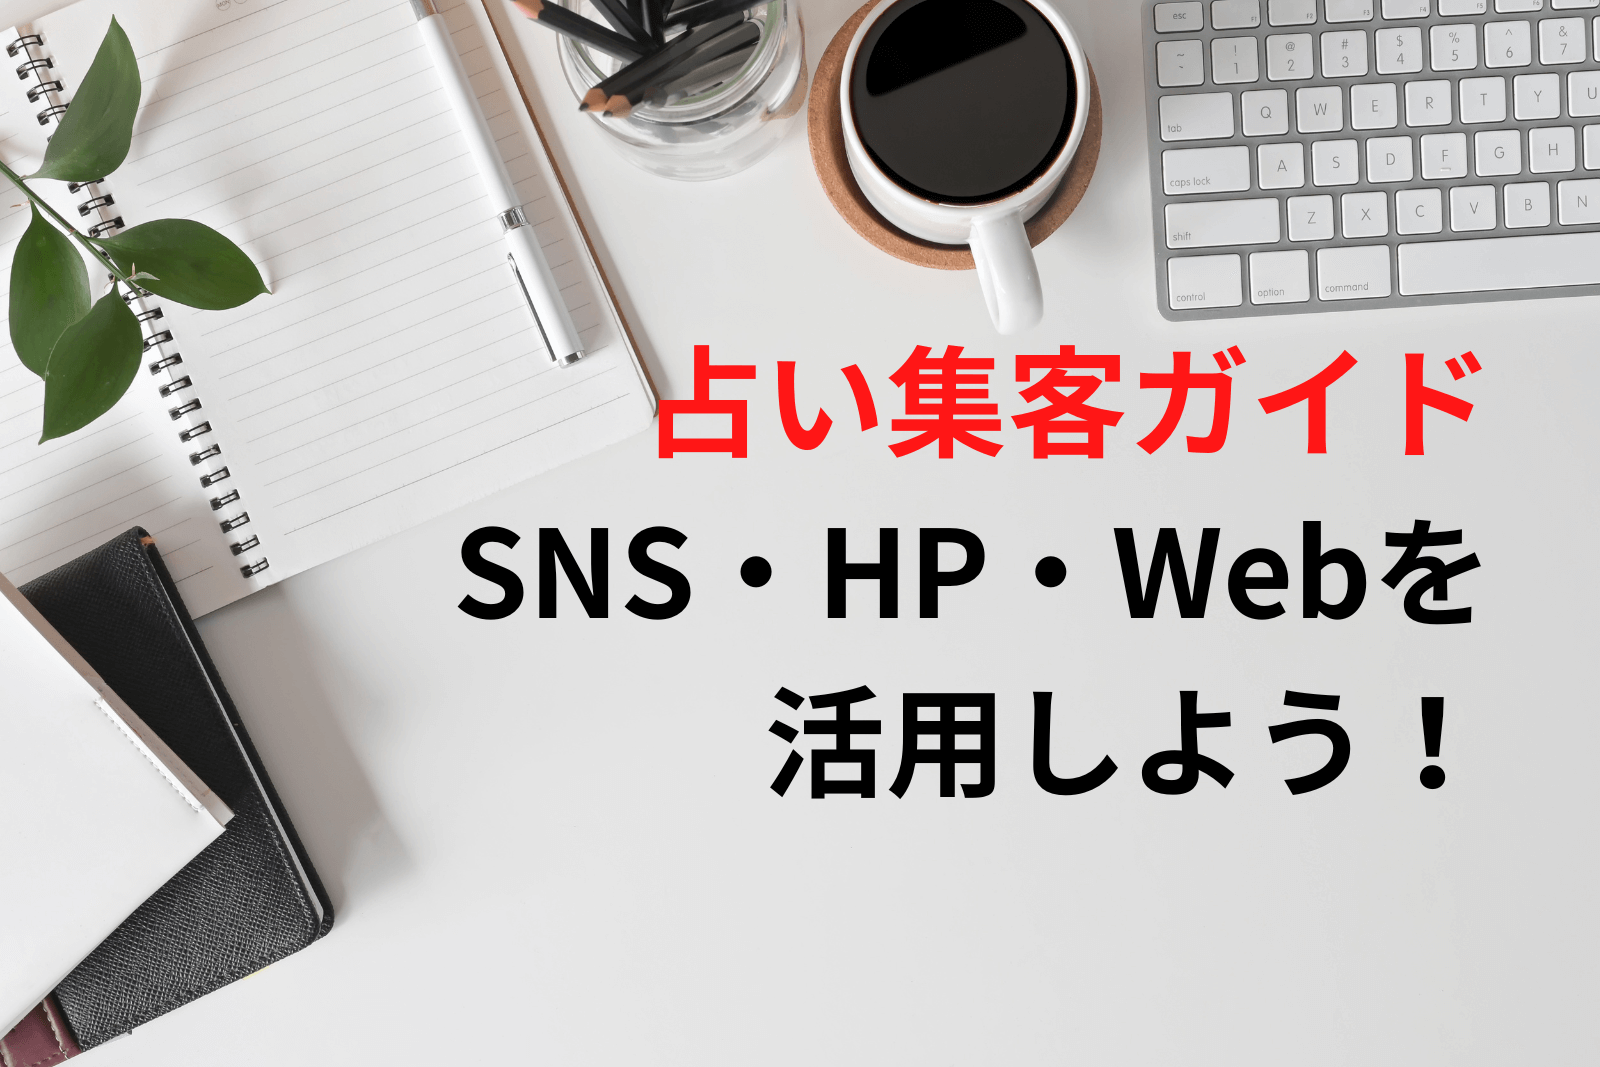 占い集客ガイド丨SNS・HP・Web集客徹底解説！